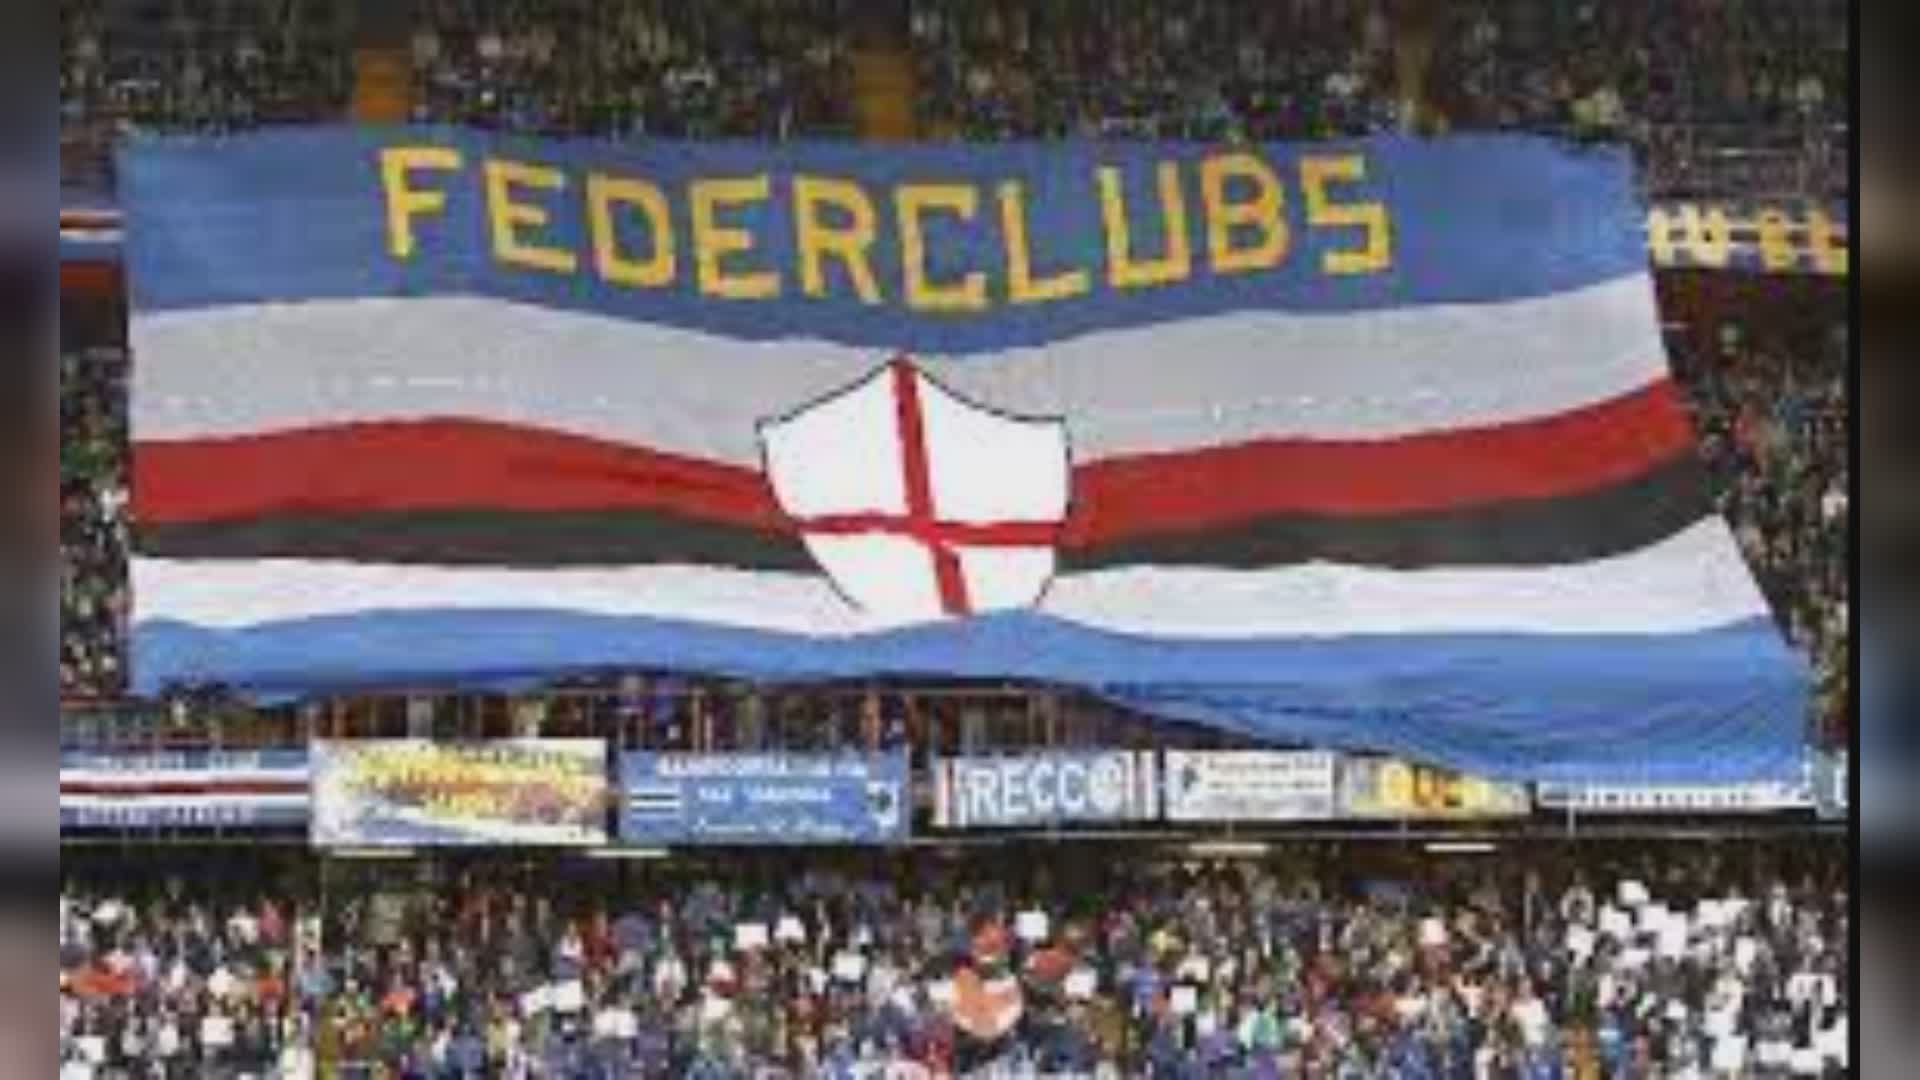 Sampdoria, la Federclubs sulle dimissioni di Lanna: "Scelte difficili da comprendere"